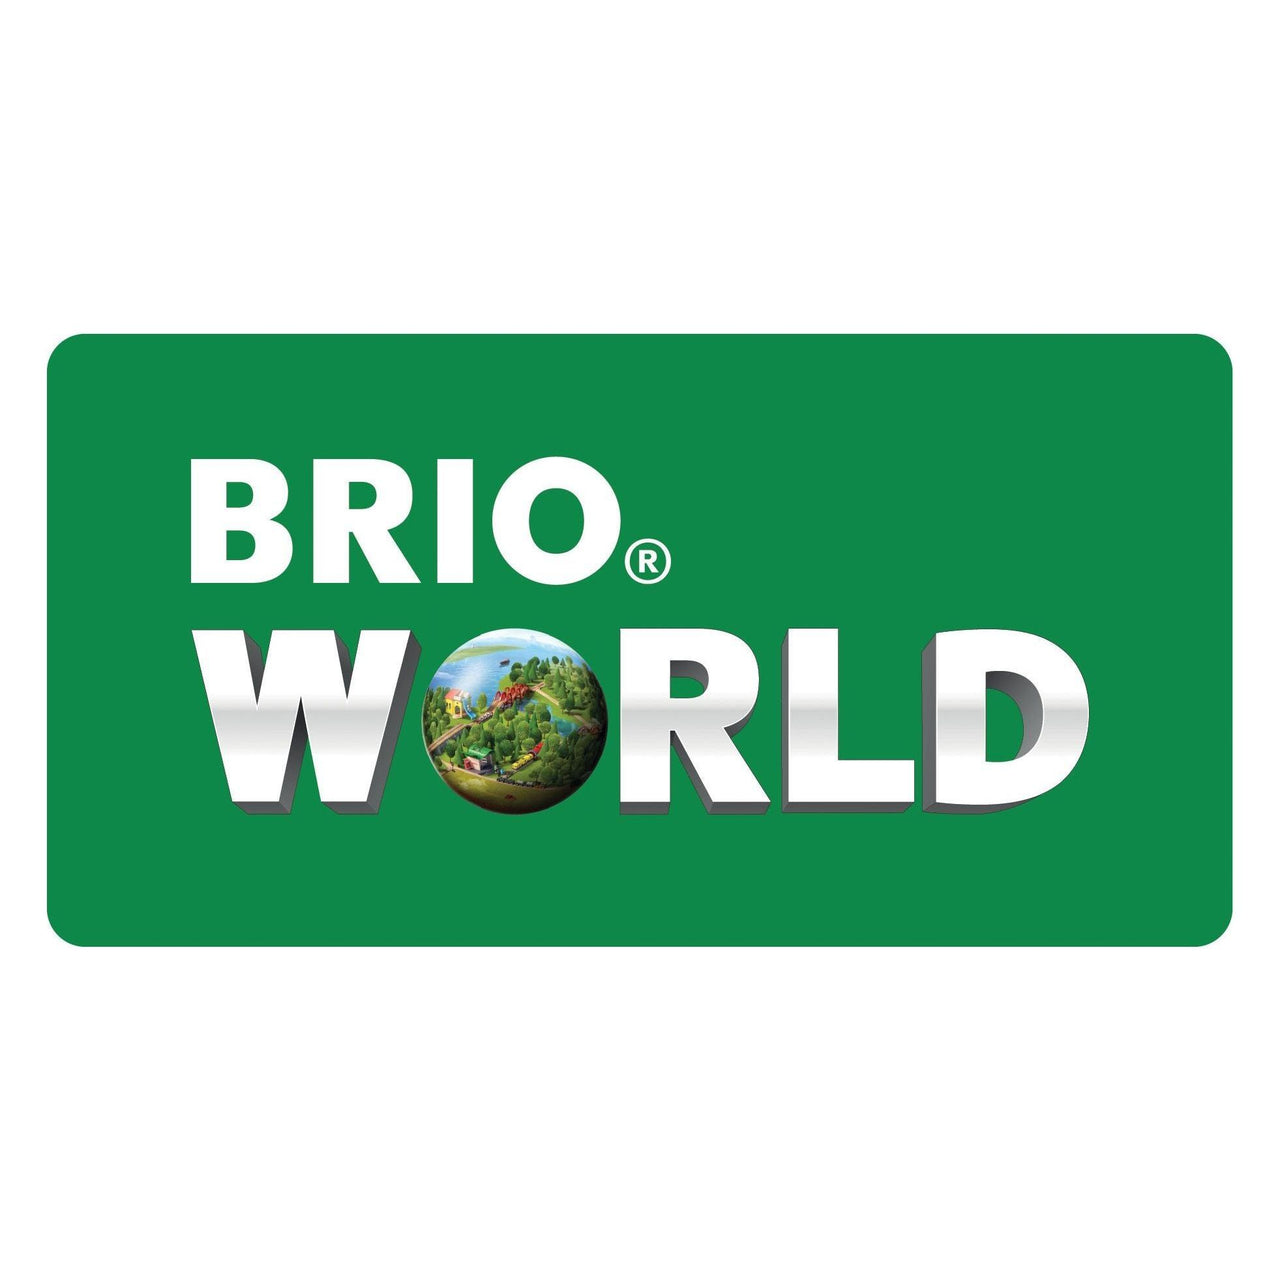 Brio Rescue Fire Fighting Train BRIO